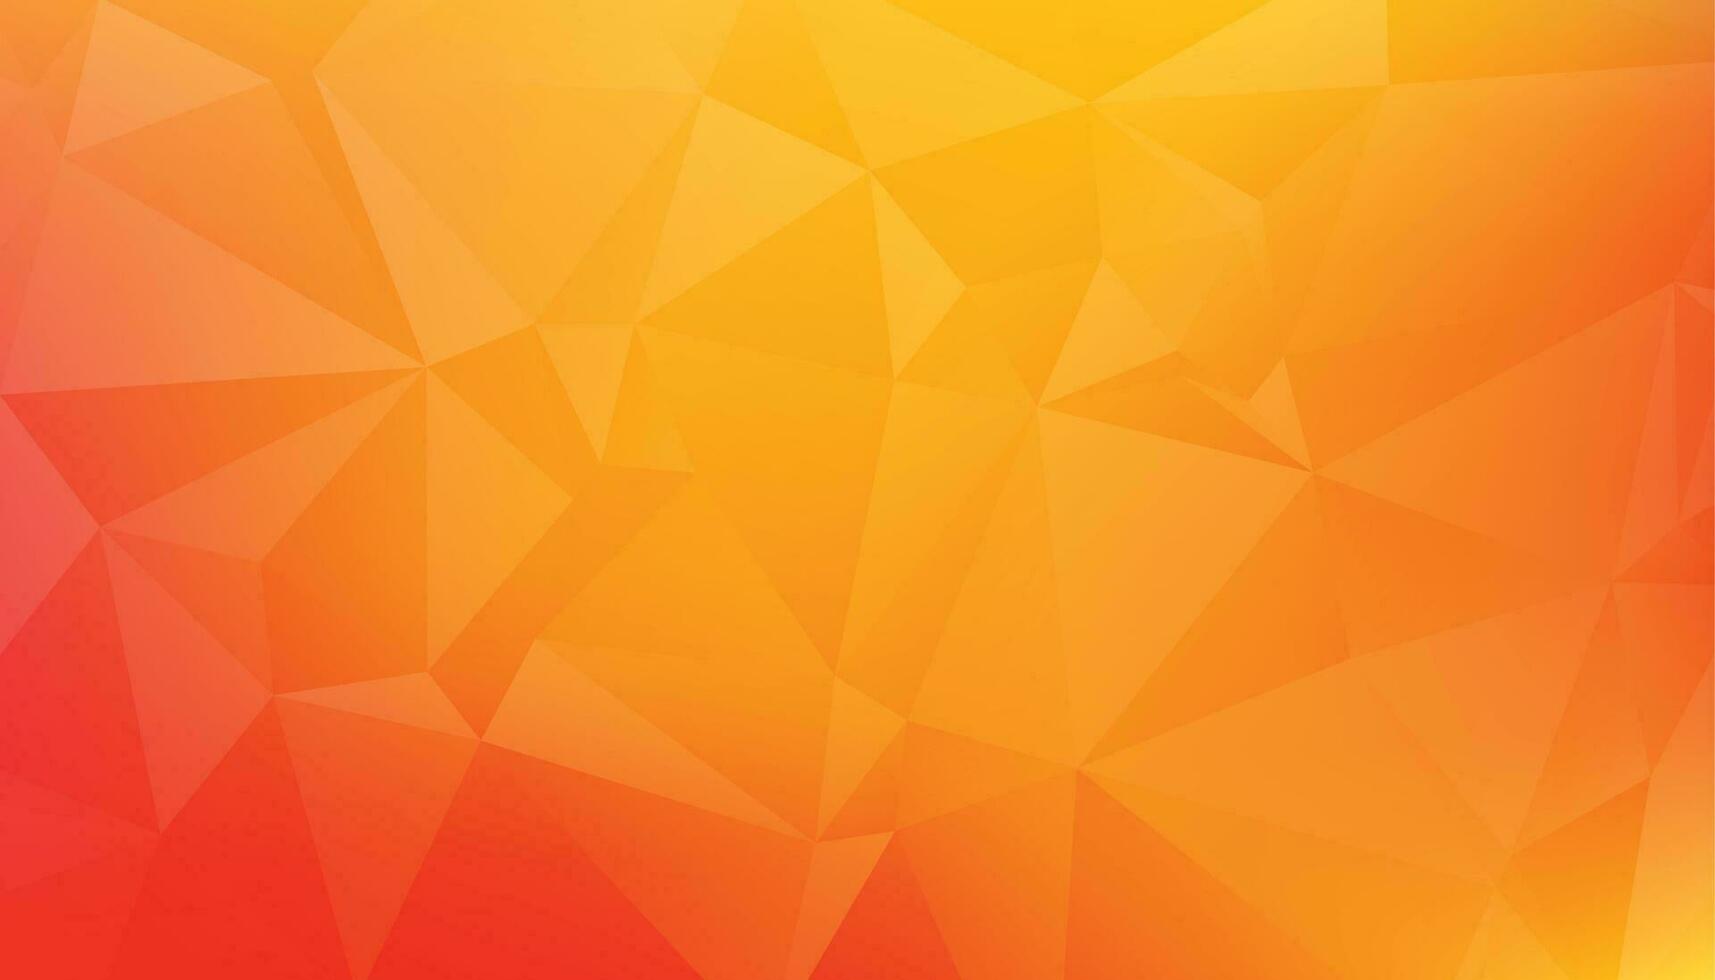 abstrakt niedrig poly Orange Gelb Hintergrund vektor